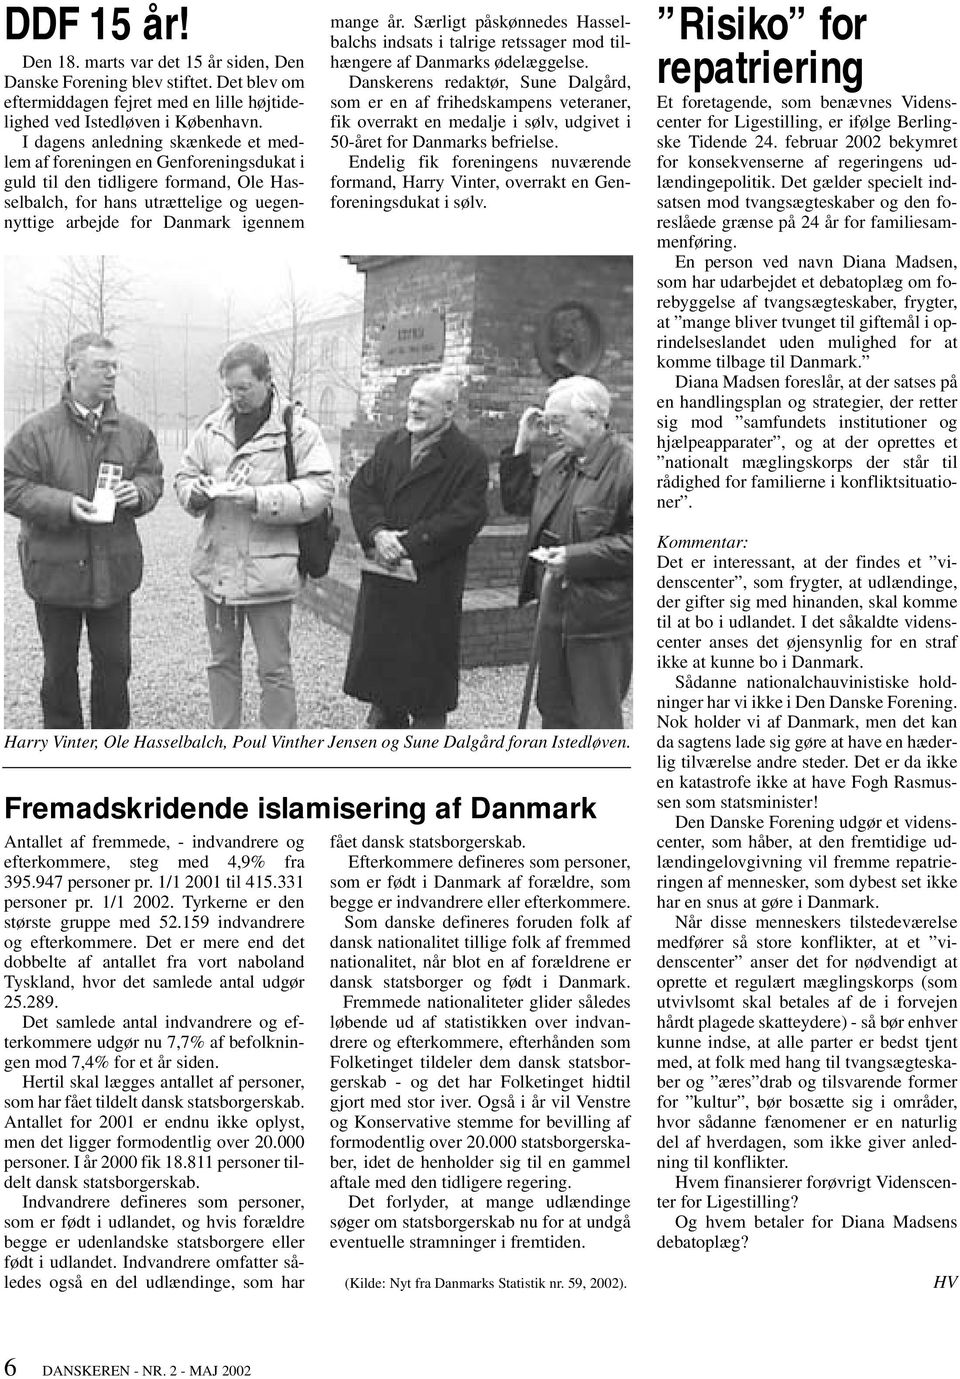 Særligt påskønnedes Hasselbalchs indsats i talrige retssager mod tilhængere af Danmarks ødelæggelse.